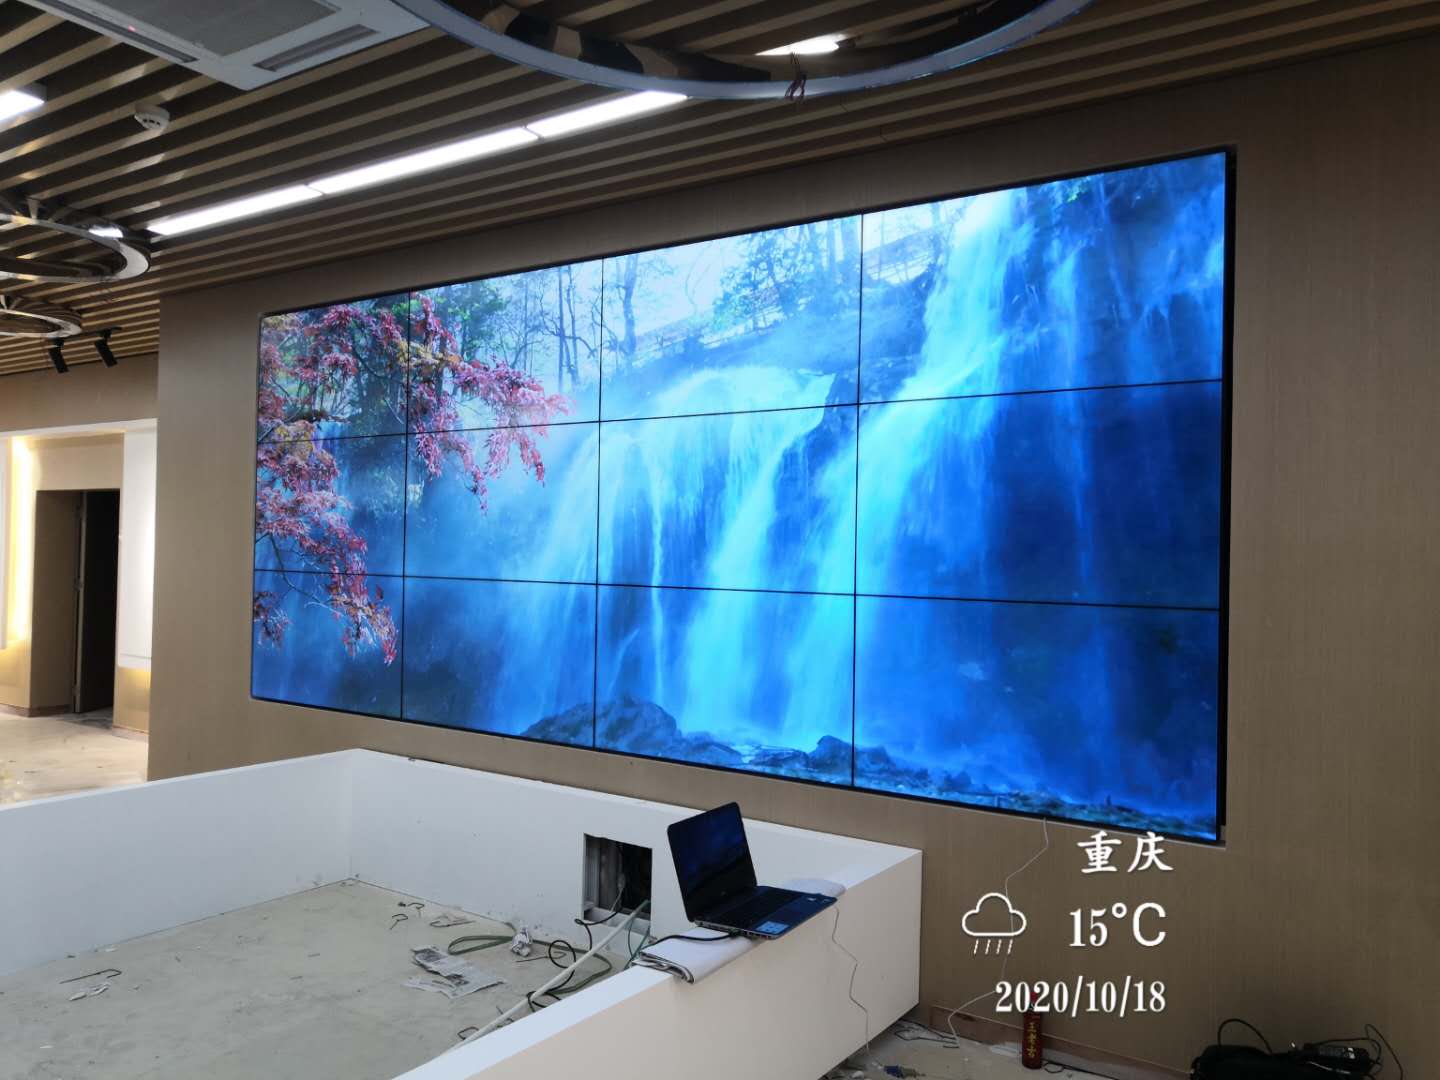  重庆三峰环保发电有限公司展厅拼接屏项目案例 